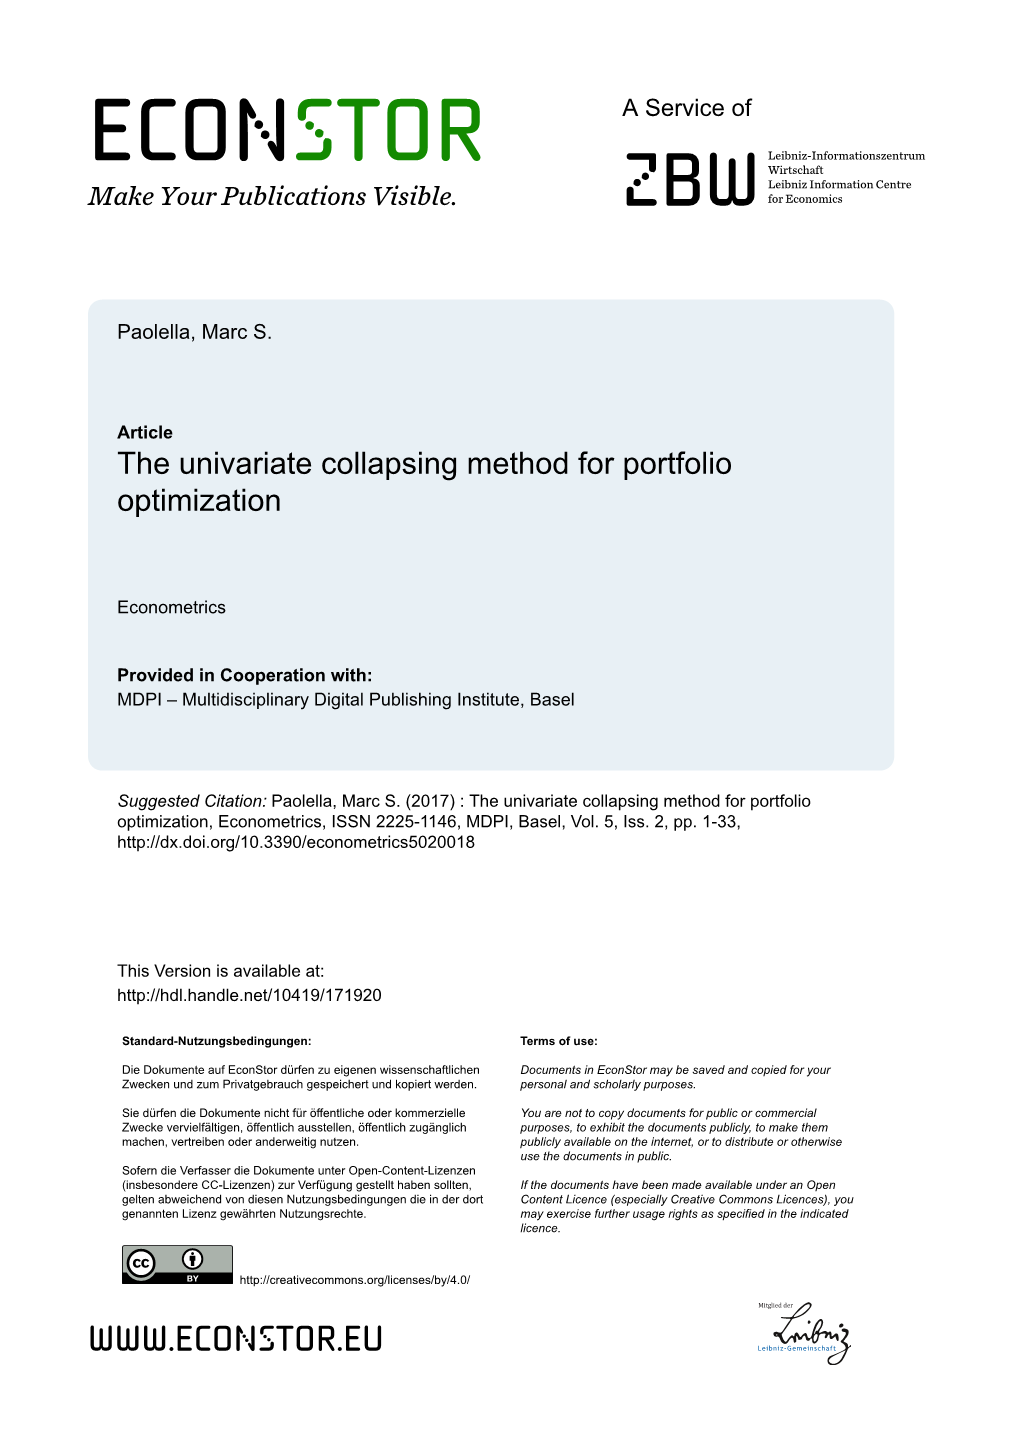 The Univariate Collapsing Method for Portfolio Optimization